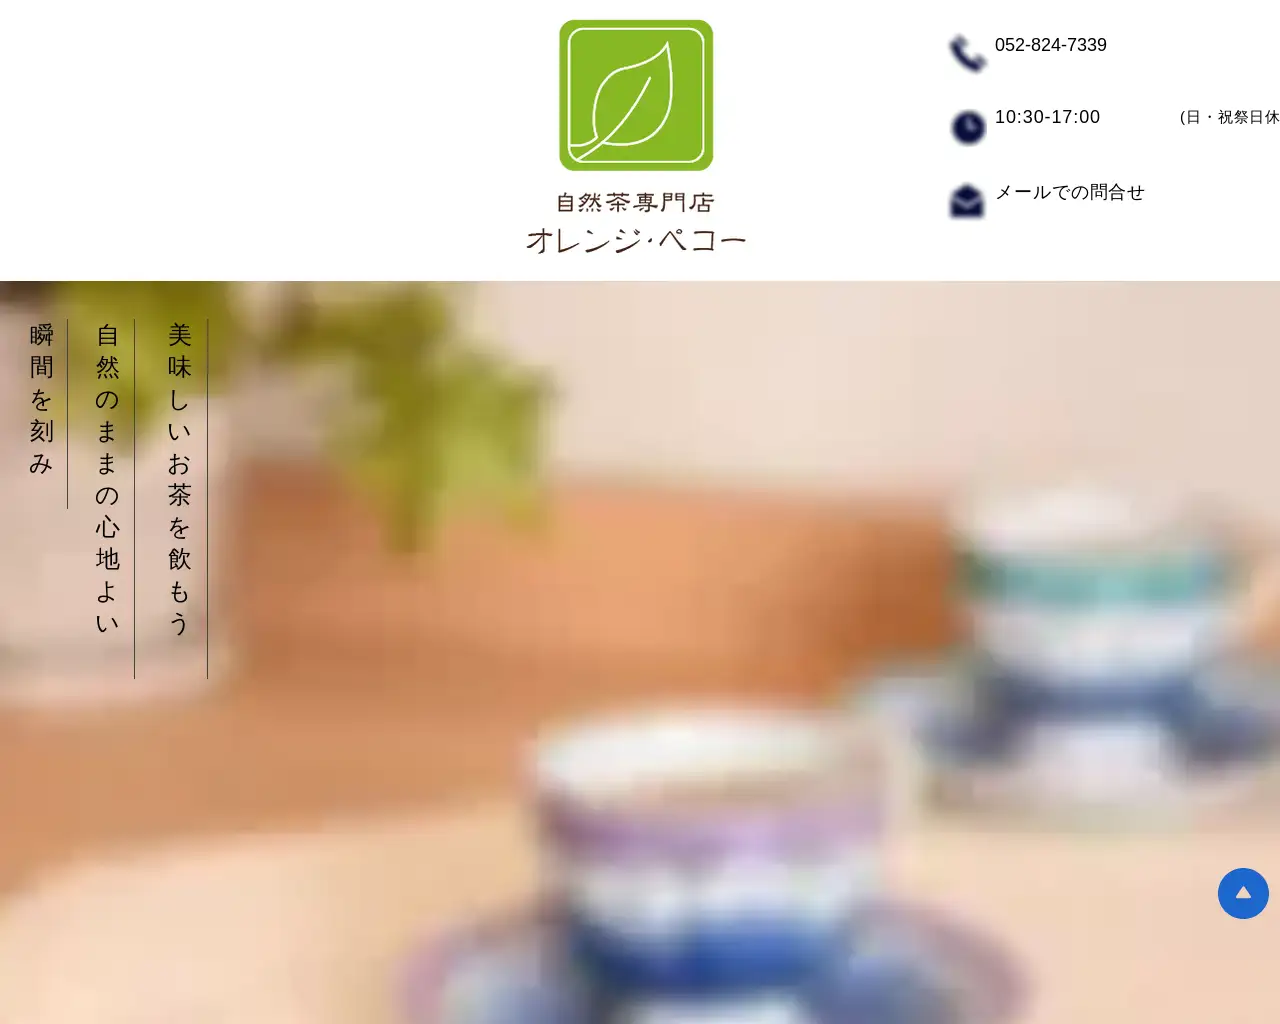 自然茶専門店オレンジ・ペコー site